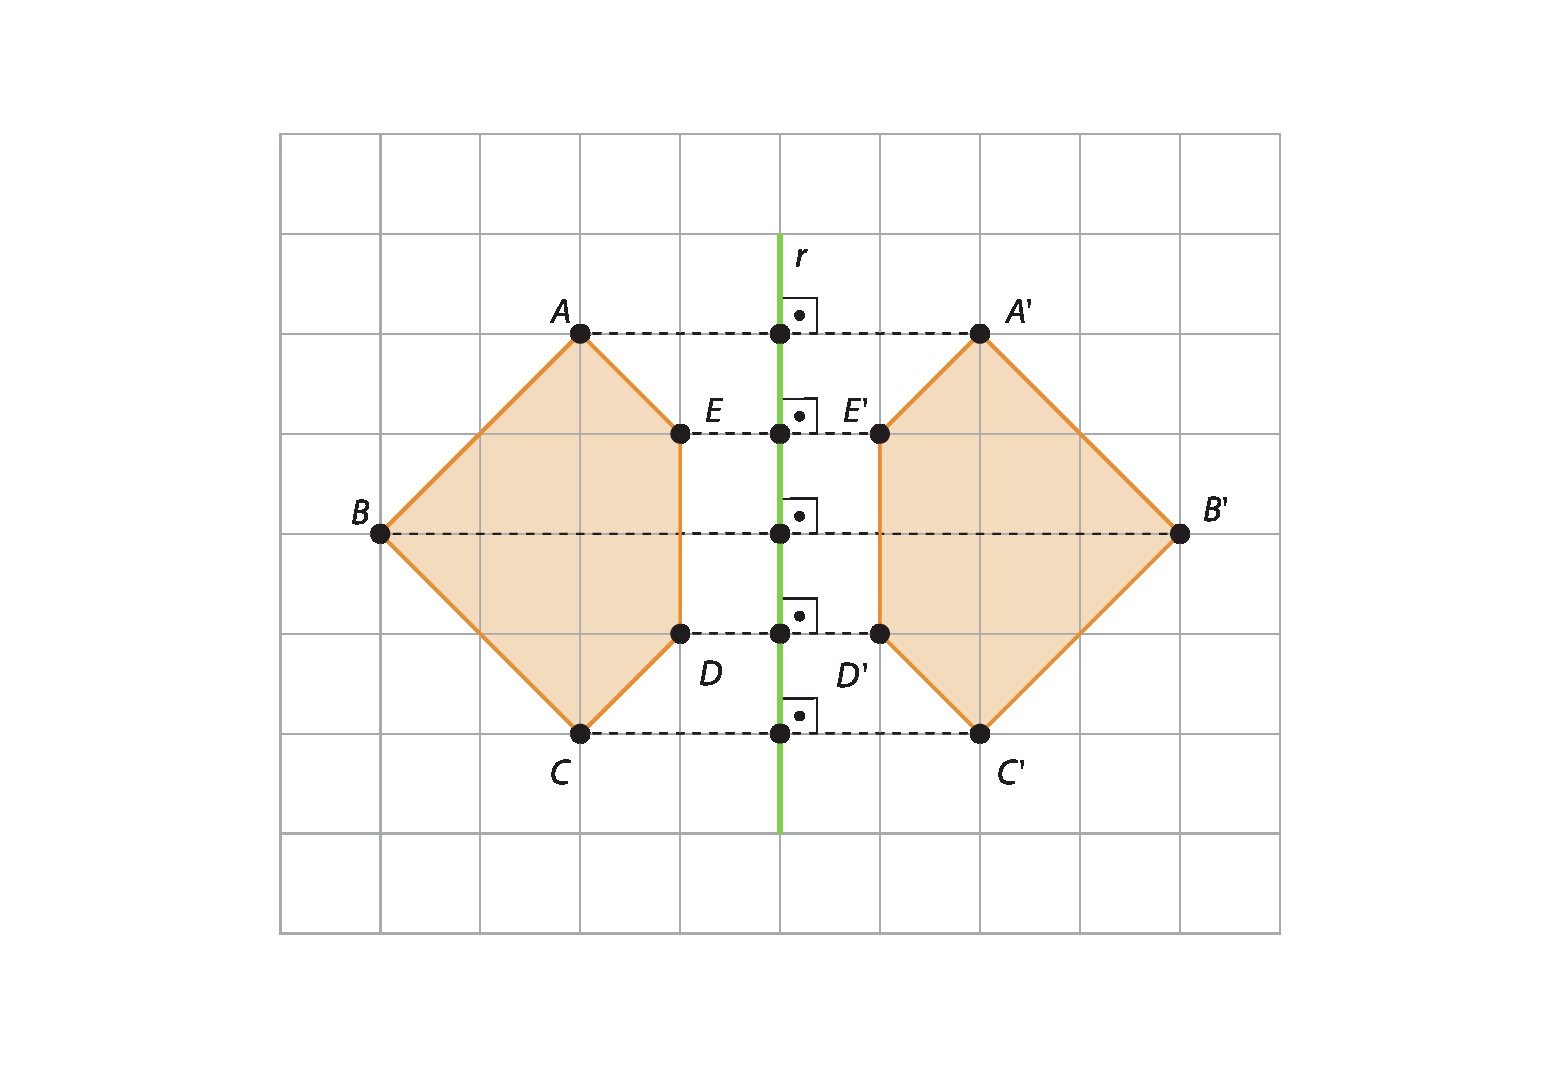 Esquema. Malha quadriculada, à esquerda figura ABCDE com 5 lados e 5 vértices, à direita, reta vertical r, na cor verde, sobre a reta estão 5 pontos com 5 ângulos retos, à direita, a figura A linha, B linha, C linha, D linha, E linha com 5 lados e 5 vértices. Linha tracejada conectando os pontos A e A linha à reta r. Linha horizontal tracejada conectando os pontos B e B linha à reta r. Linha horizontal tracejada conectando os pontos C e C linha à reta r. Linha horizontal tracejada conectando os pontos D e D linha à reta r. Linha horizontal tracejada conectando os pontos E e E linha à reta r. Os vértices A e A linha, B e B linha, C e C linha, D e D linha, E e E linha estão à mesma distância da reta r. A figura à esquerda é uma reflexão da figura à direita.